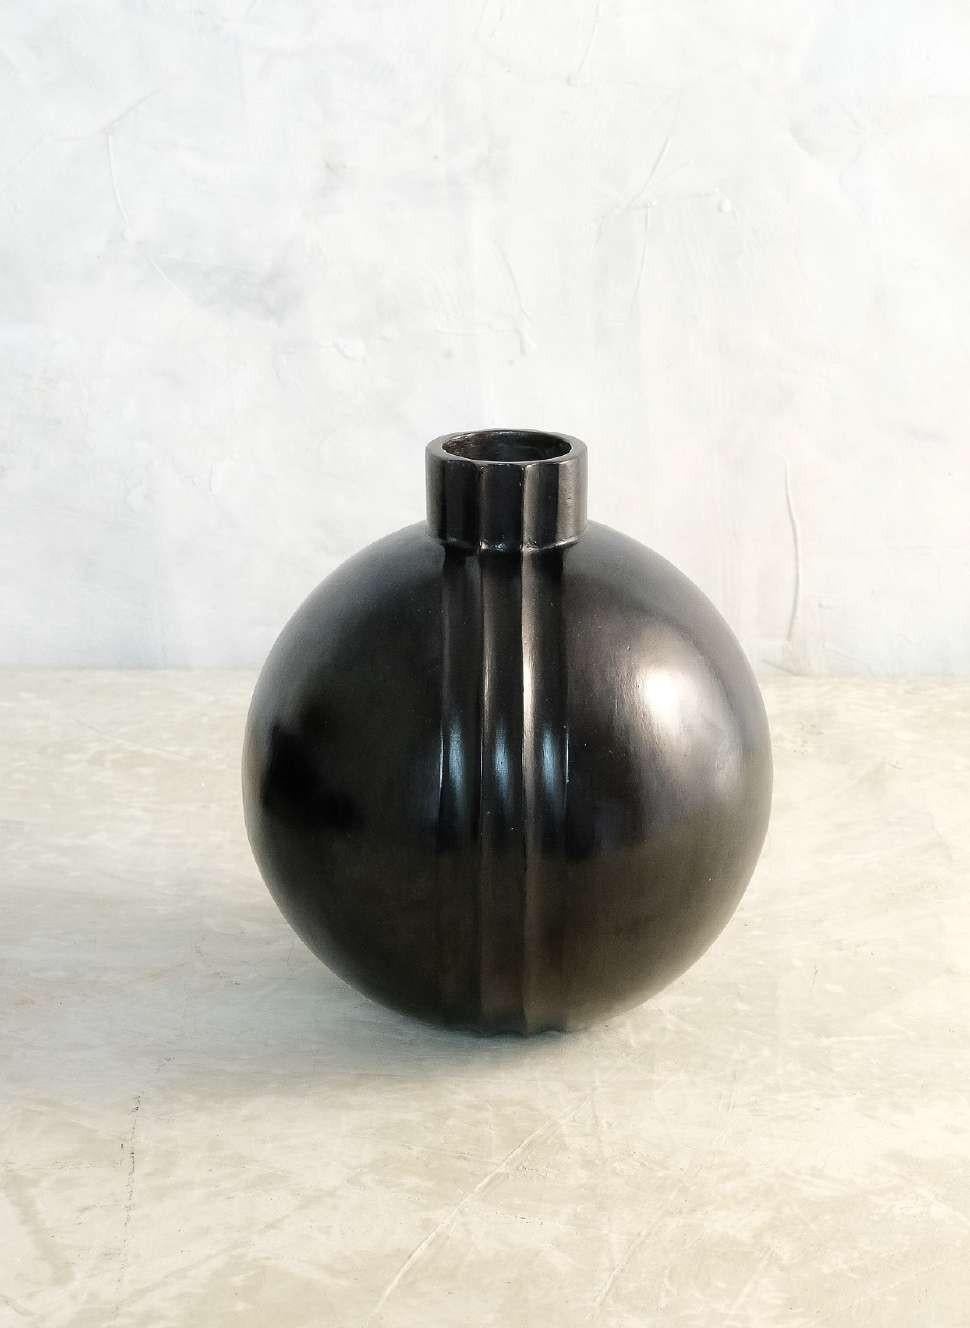 Vase Cascabel d'Onora
Dimensions : D 23 x H 20 cm
Matériaux : Argile

Cette collection réinterprète l'une des plus anciennes techniques structurelles de la poterie, l'enroulement. Les récipients réalisés avec cette technique sont faits de